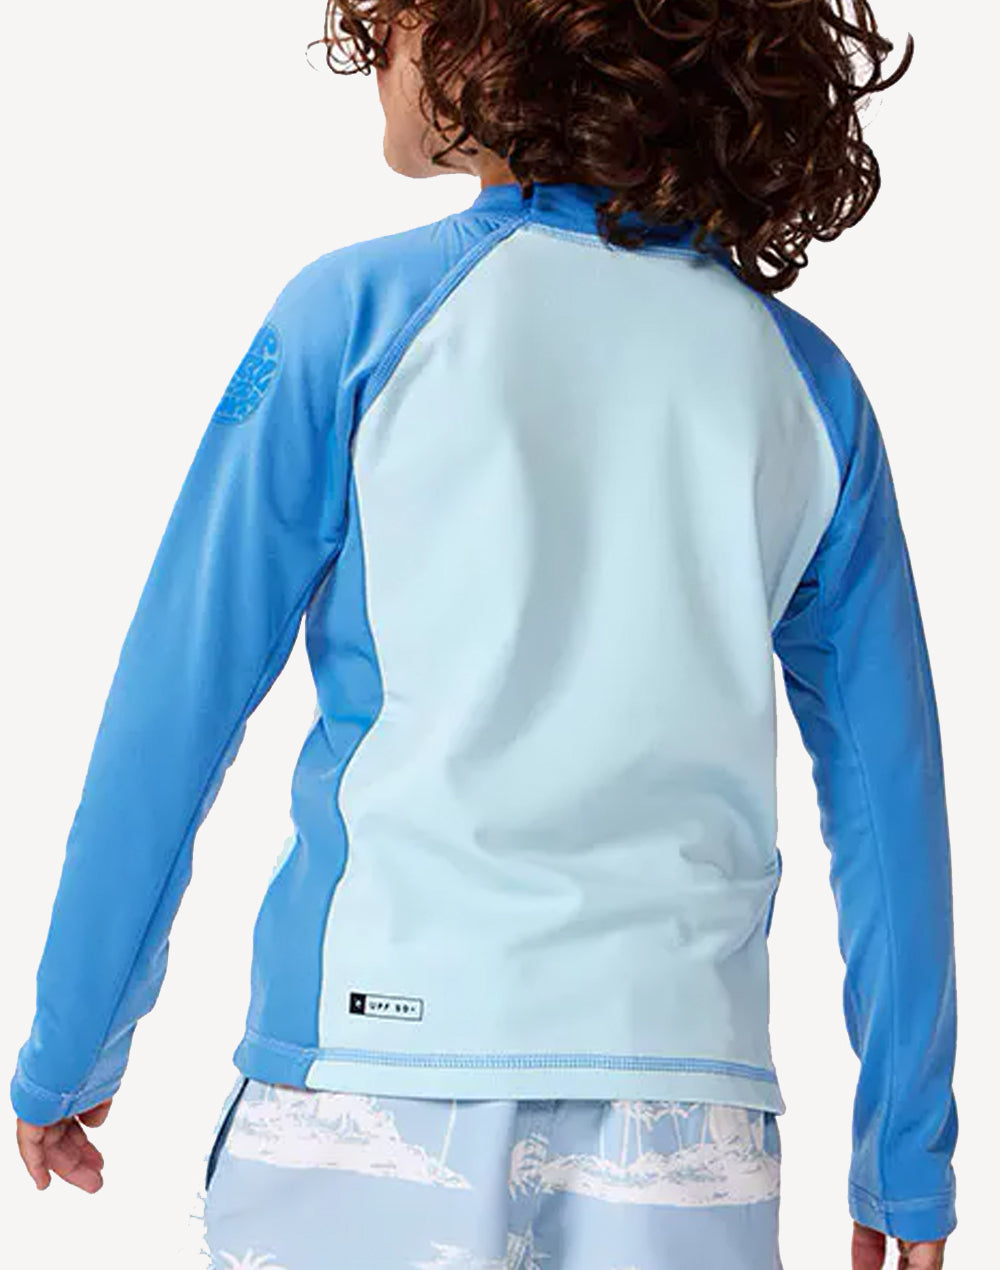 Toddler Boys Icons Brushed UPF 50+ Long Sleeve Swim Shirt#color_blue-gum